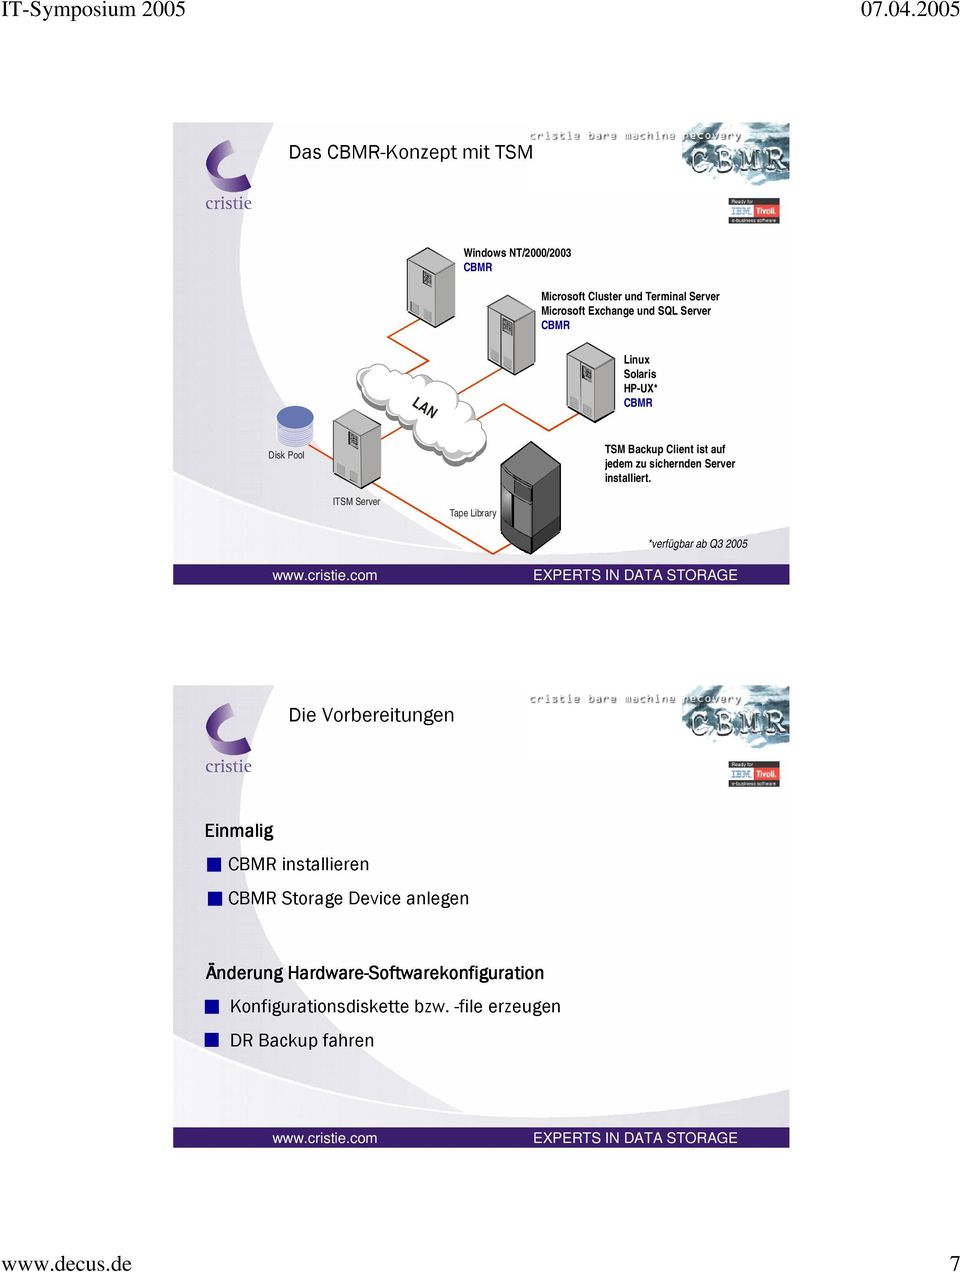 ITSM Server Tape Library *verfügbar ab Q3 2005 Die Vorbereitungen Einmalig CBMR installieren CBMR Storage Device